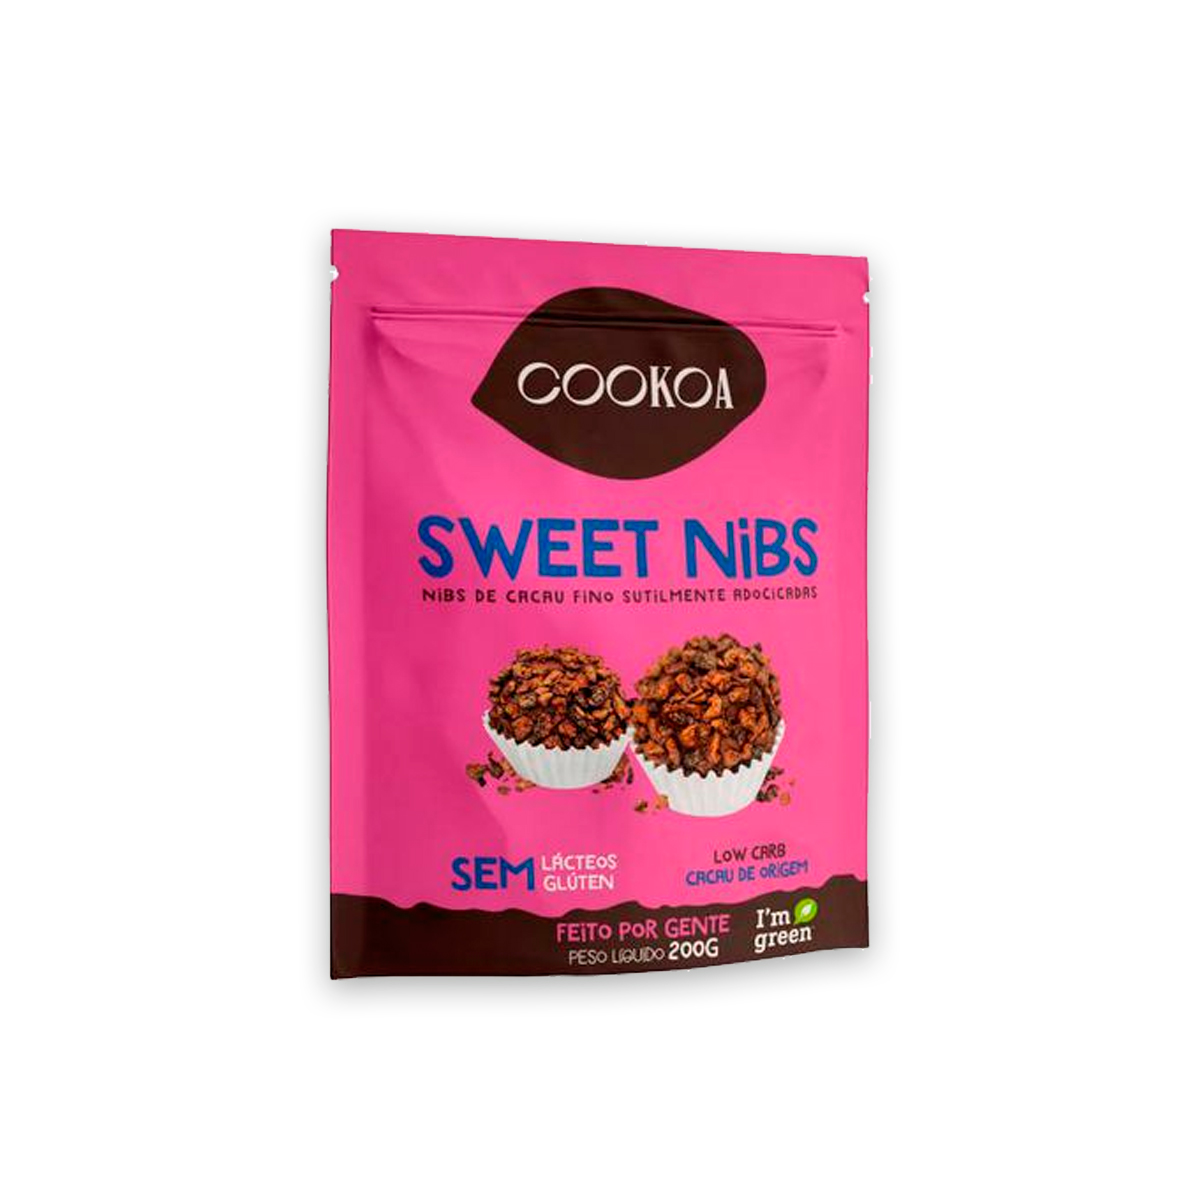 Sweet Nibs de Cacau Fino Levemente Adoçado 200g Cookoa